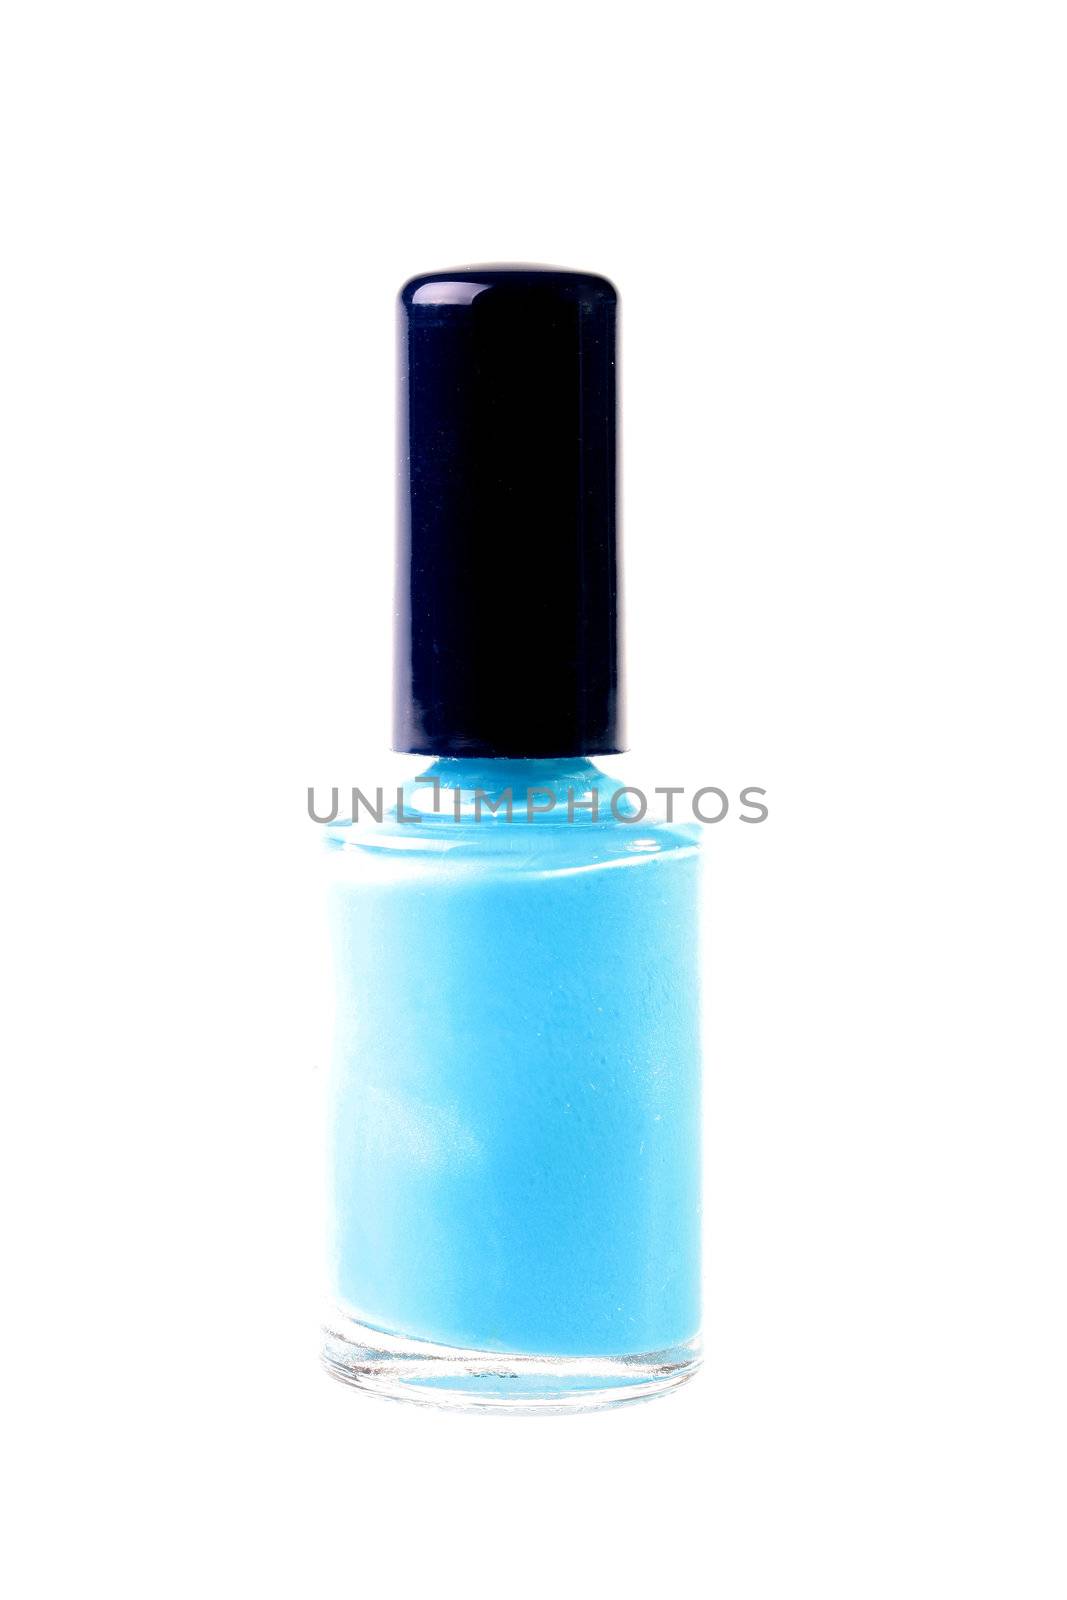 Nail polish by VIPDesignUSA